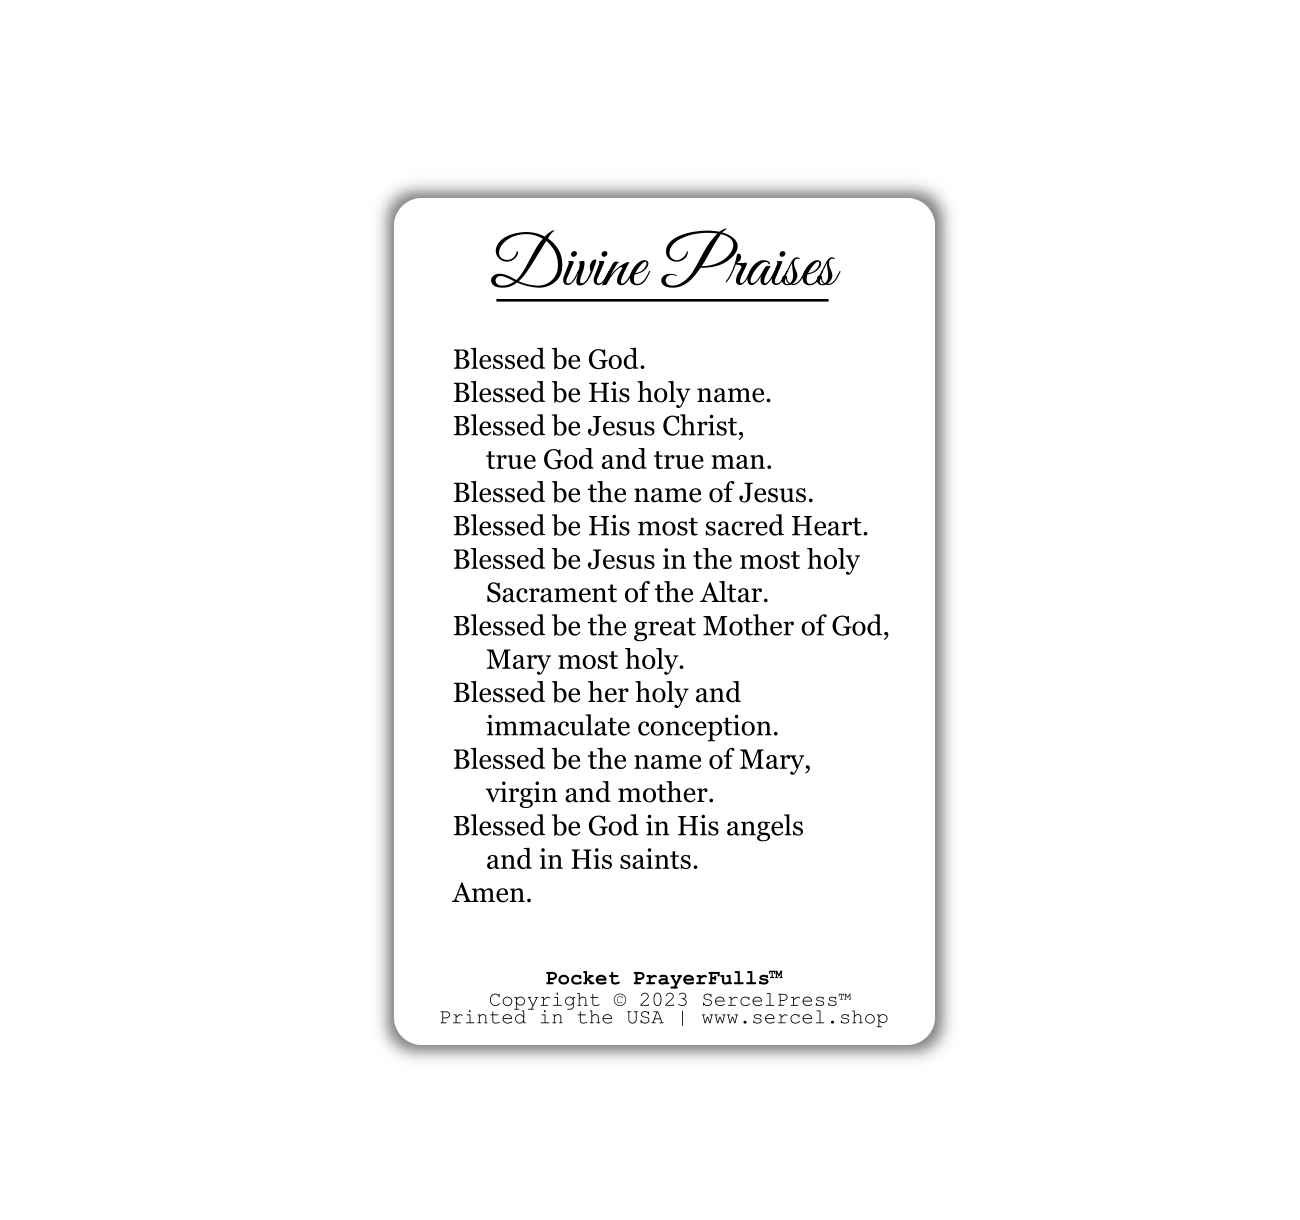 Divine Praises: Pocket PrayerFulls™ | Durable Wallet Prayer Cards | Catholic Prayers